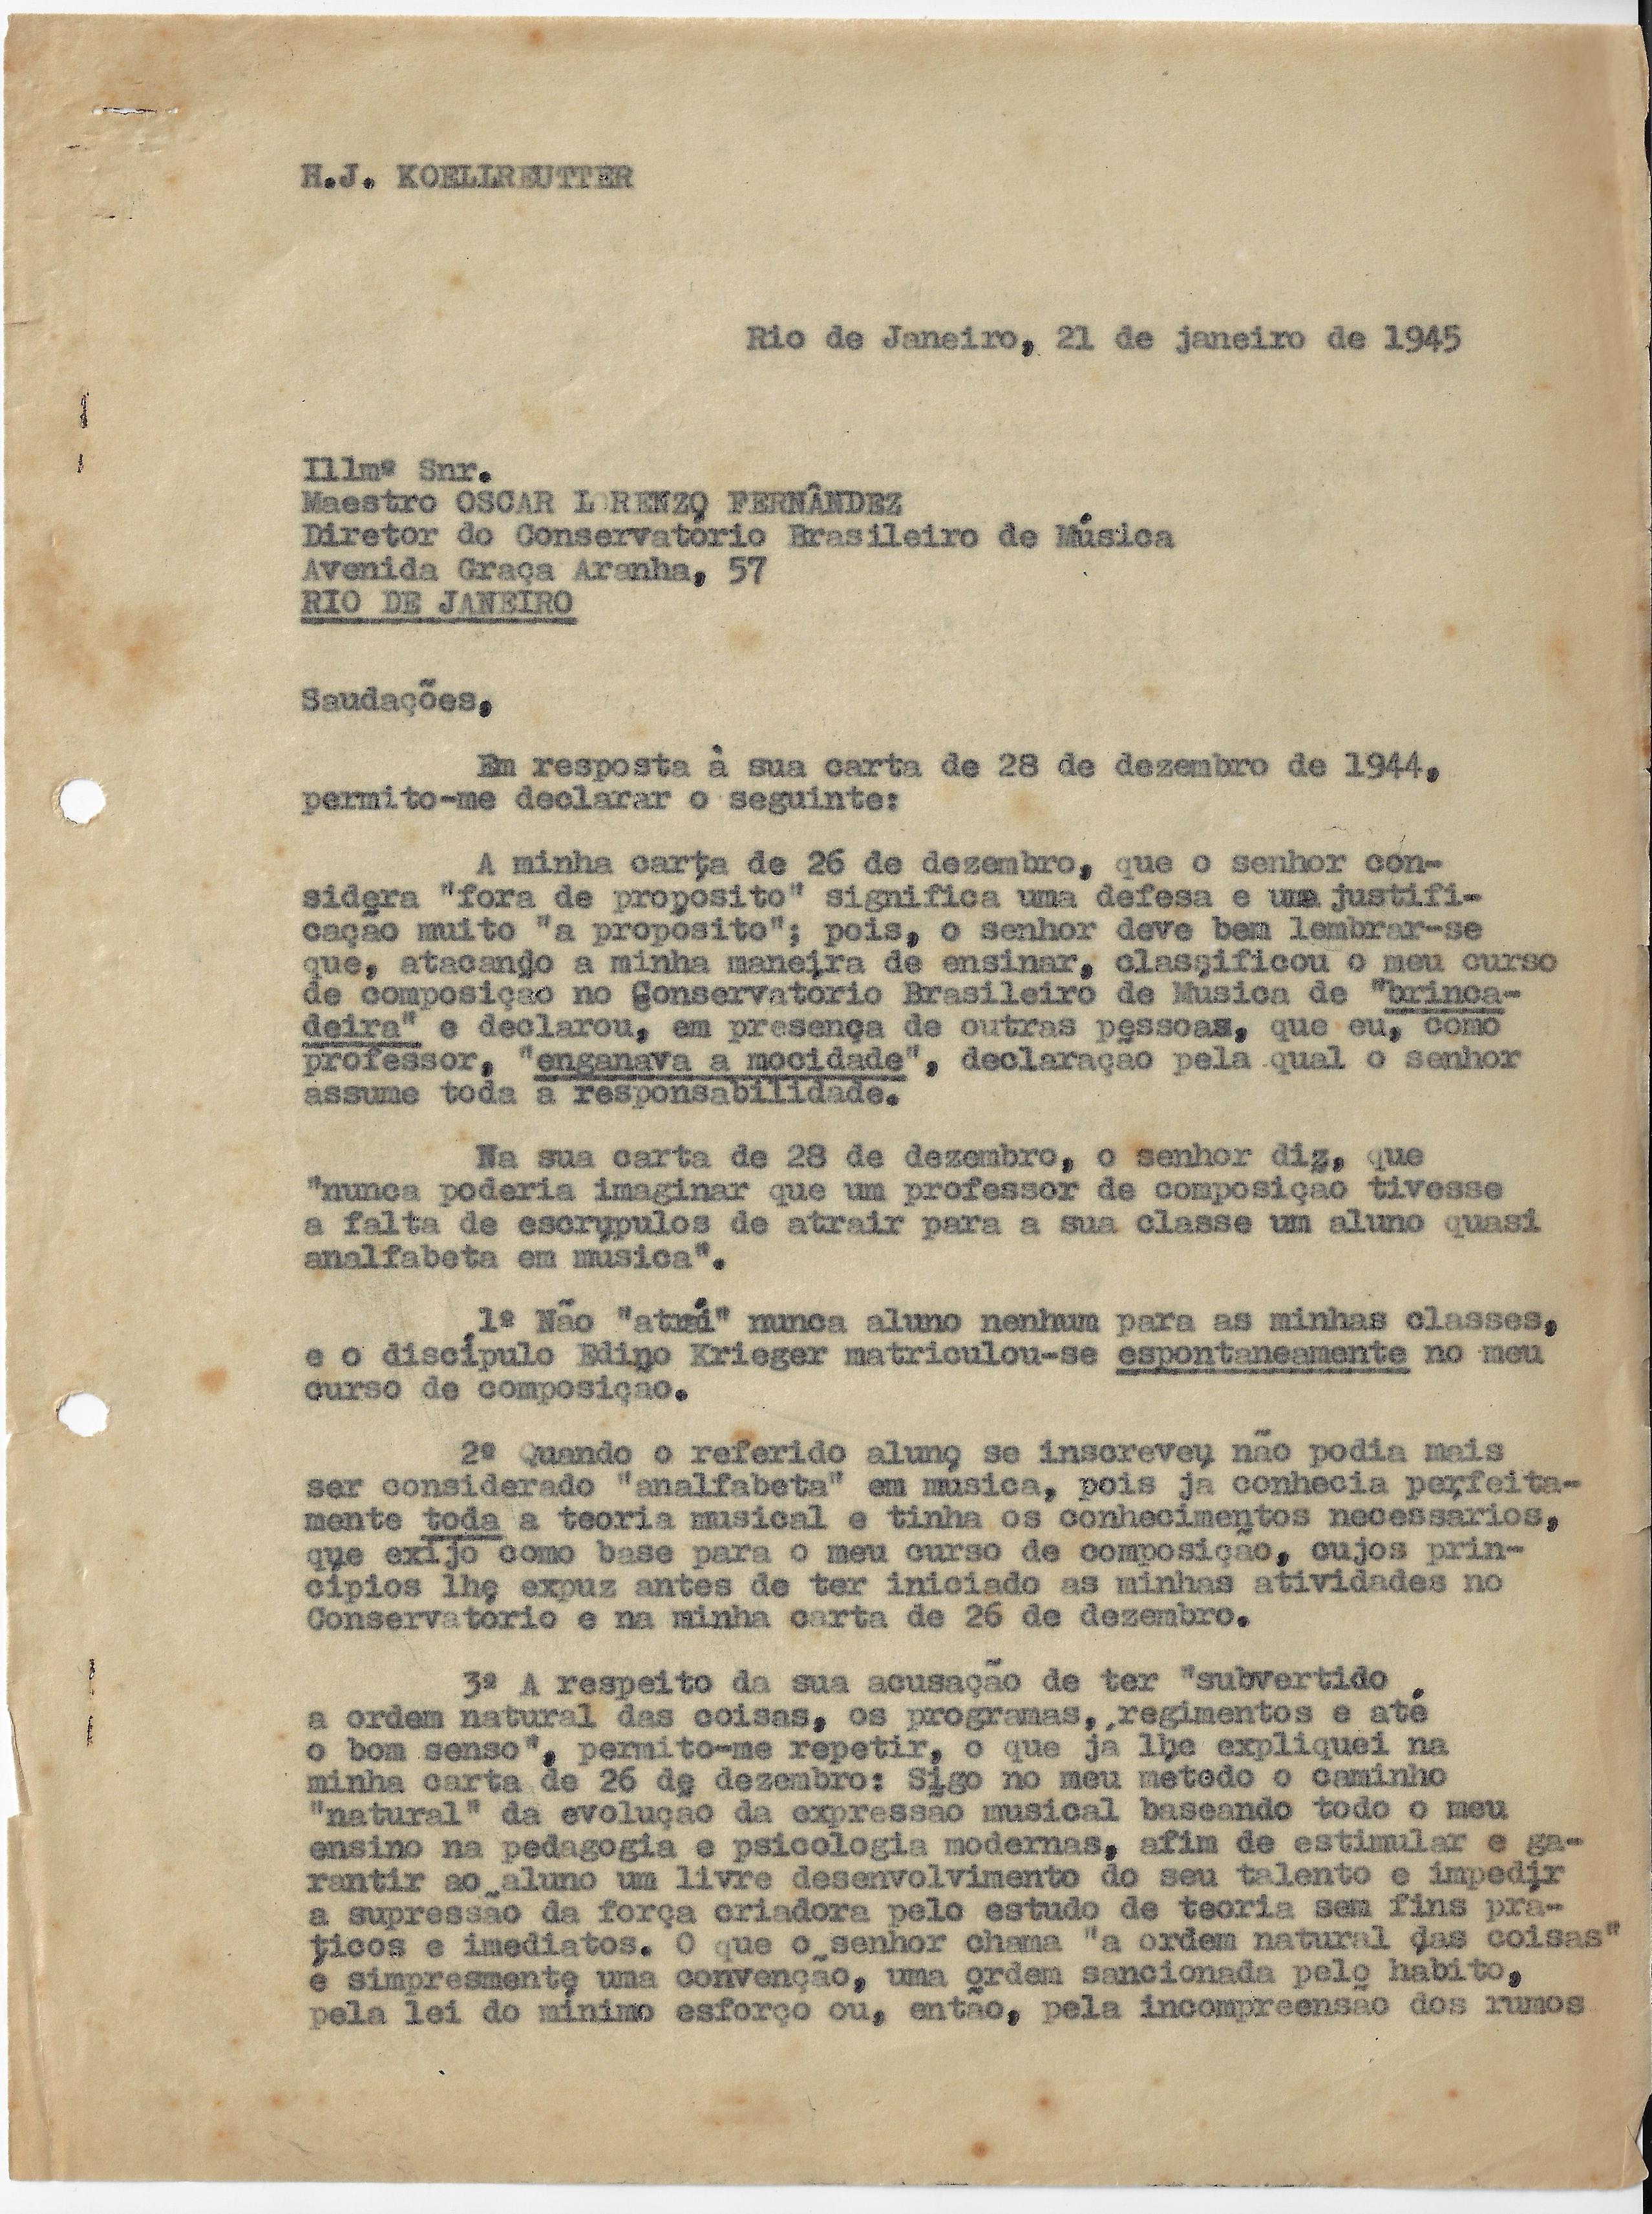 Carta de Koellreutter a Oscar Lorenzo em 21 de janeiro de 1945